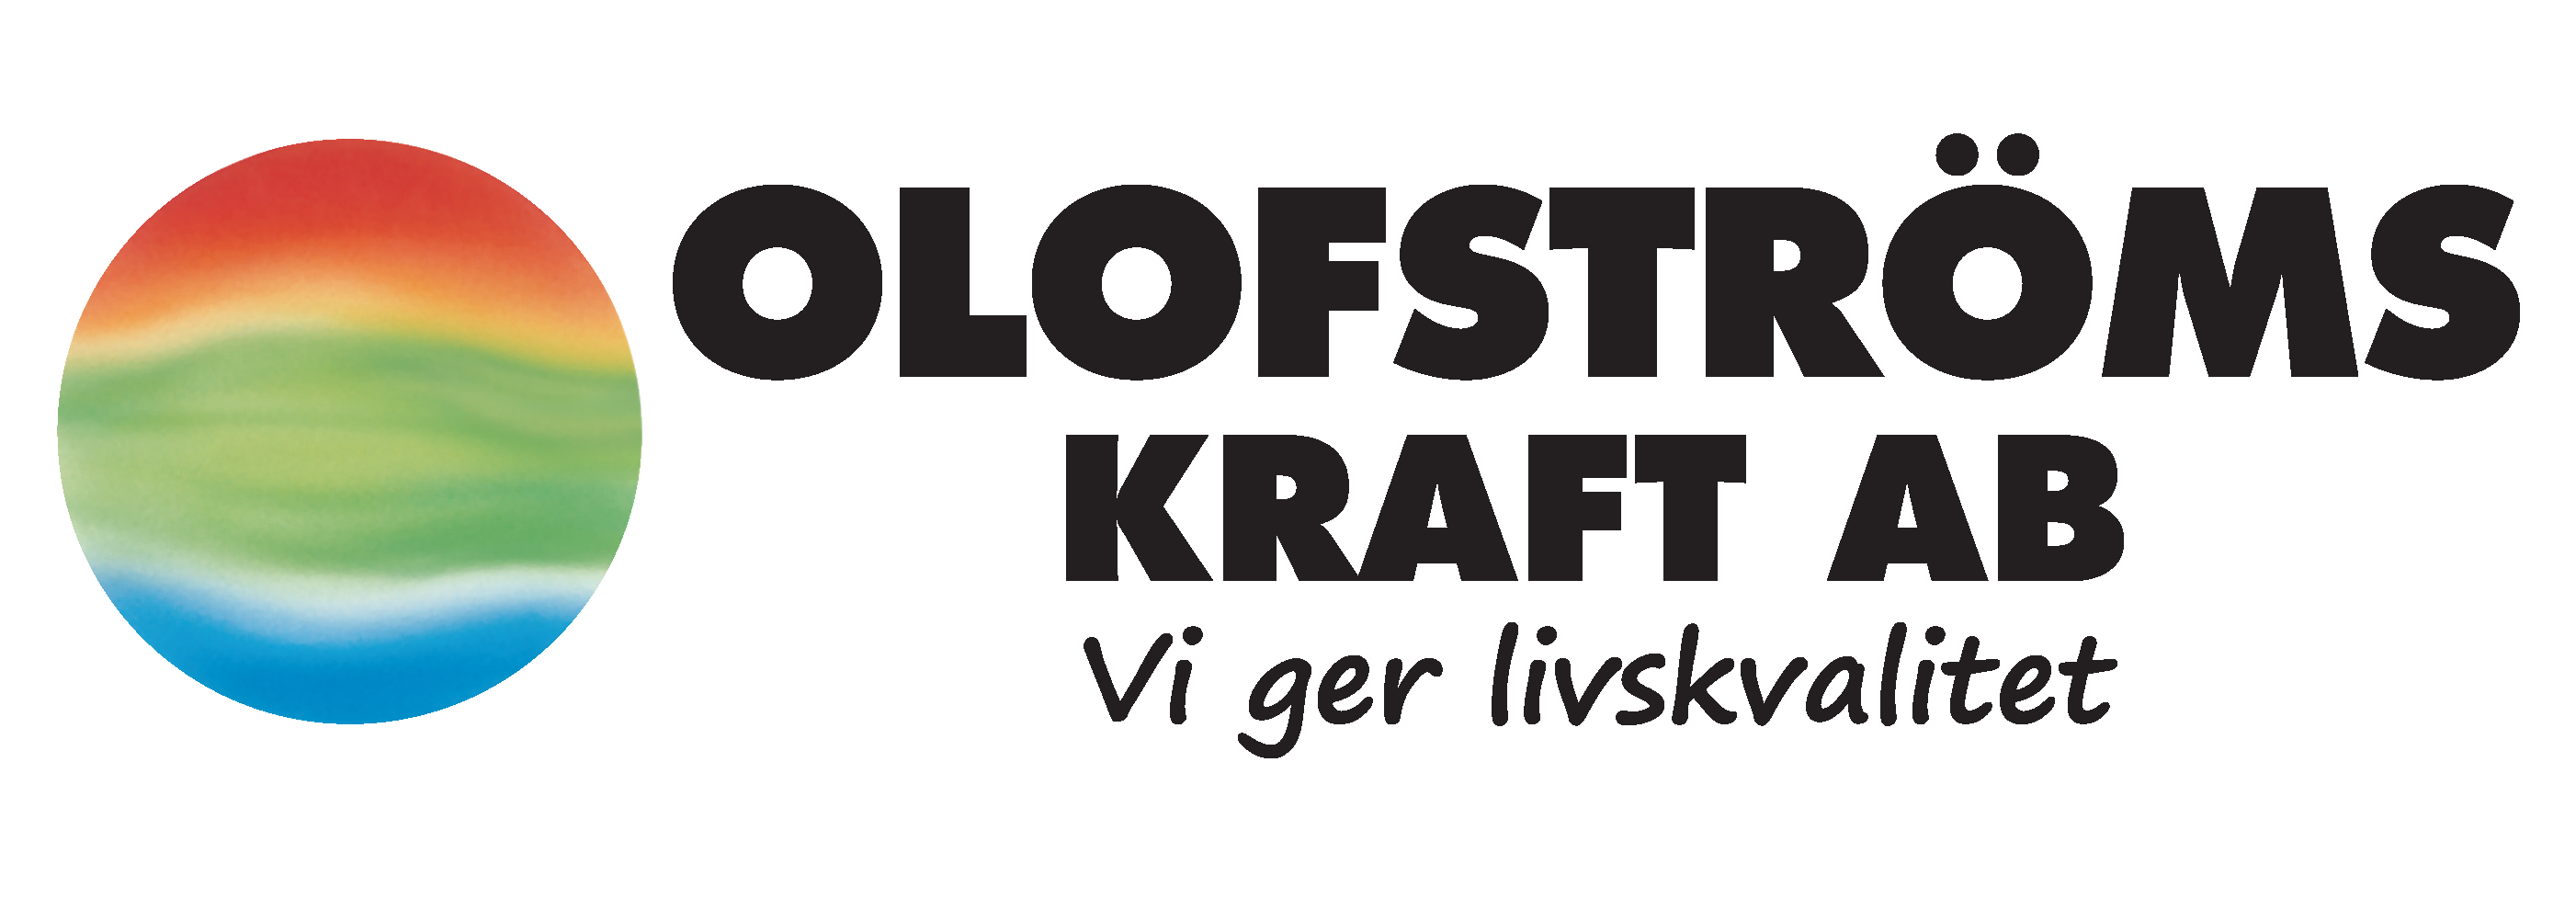 Olofströmskraft